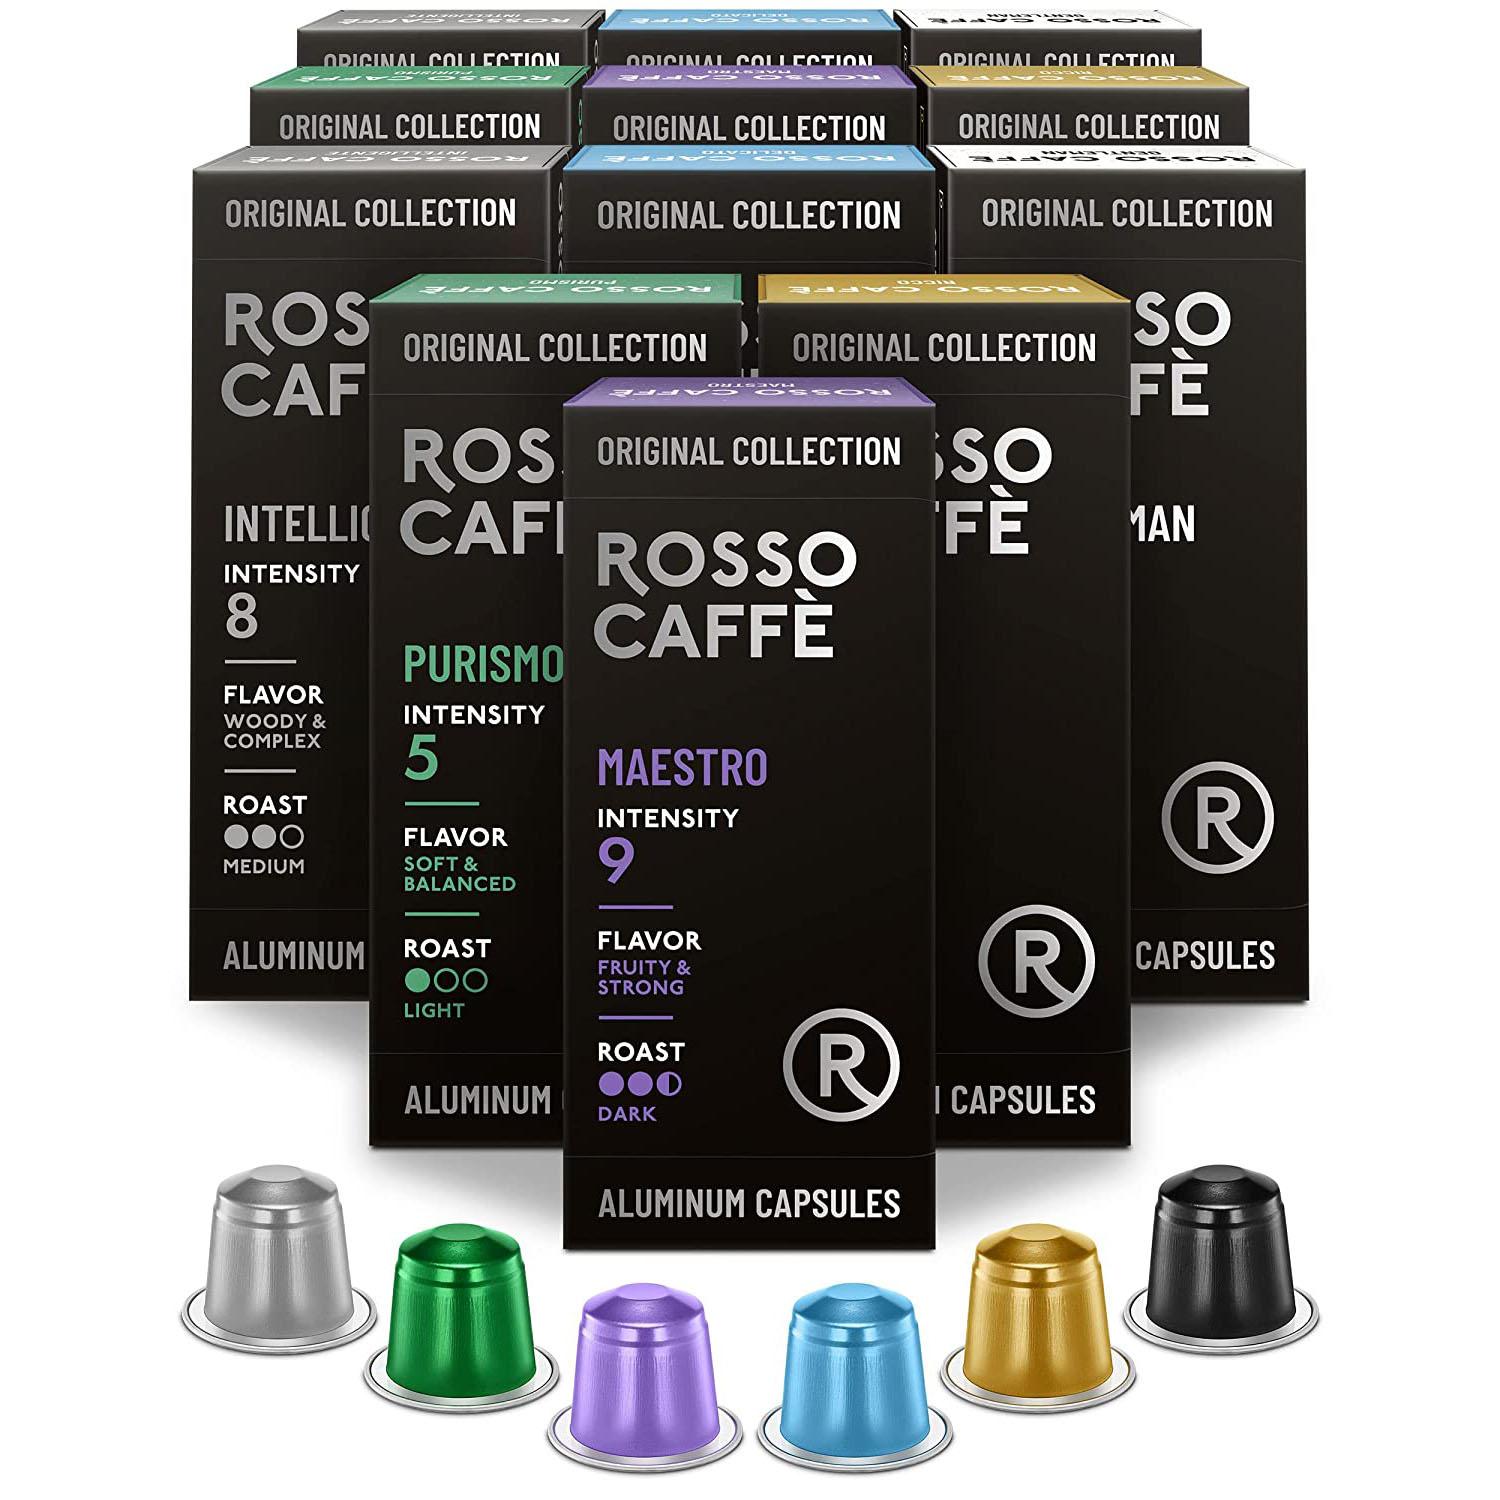 Nespresso Original Line Rosso Caffe Gourmet Coffee Pods 120 Pack for $23.34 Shipped